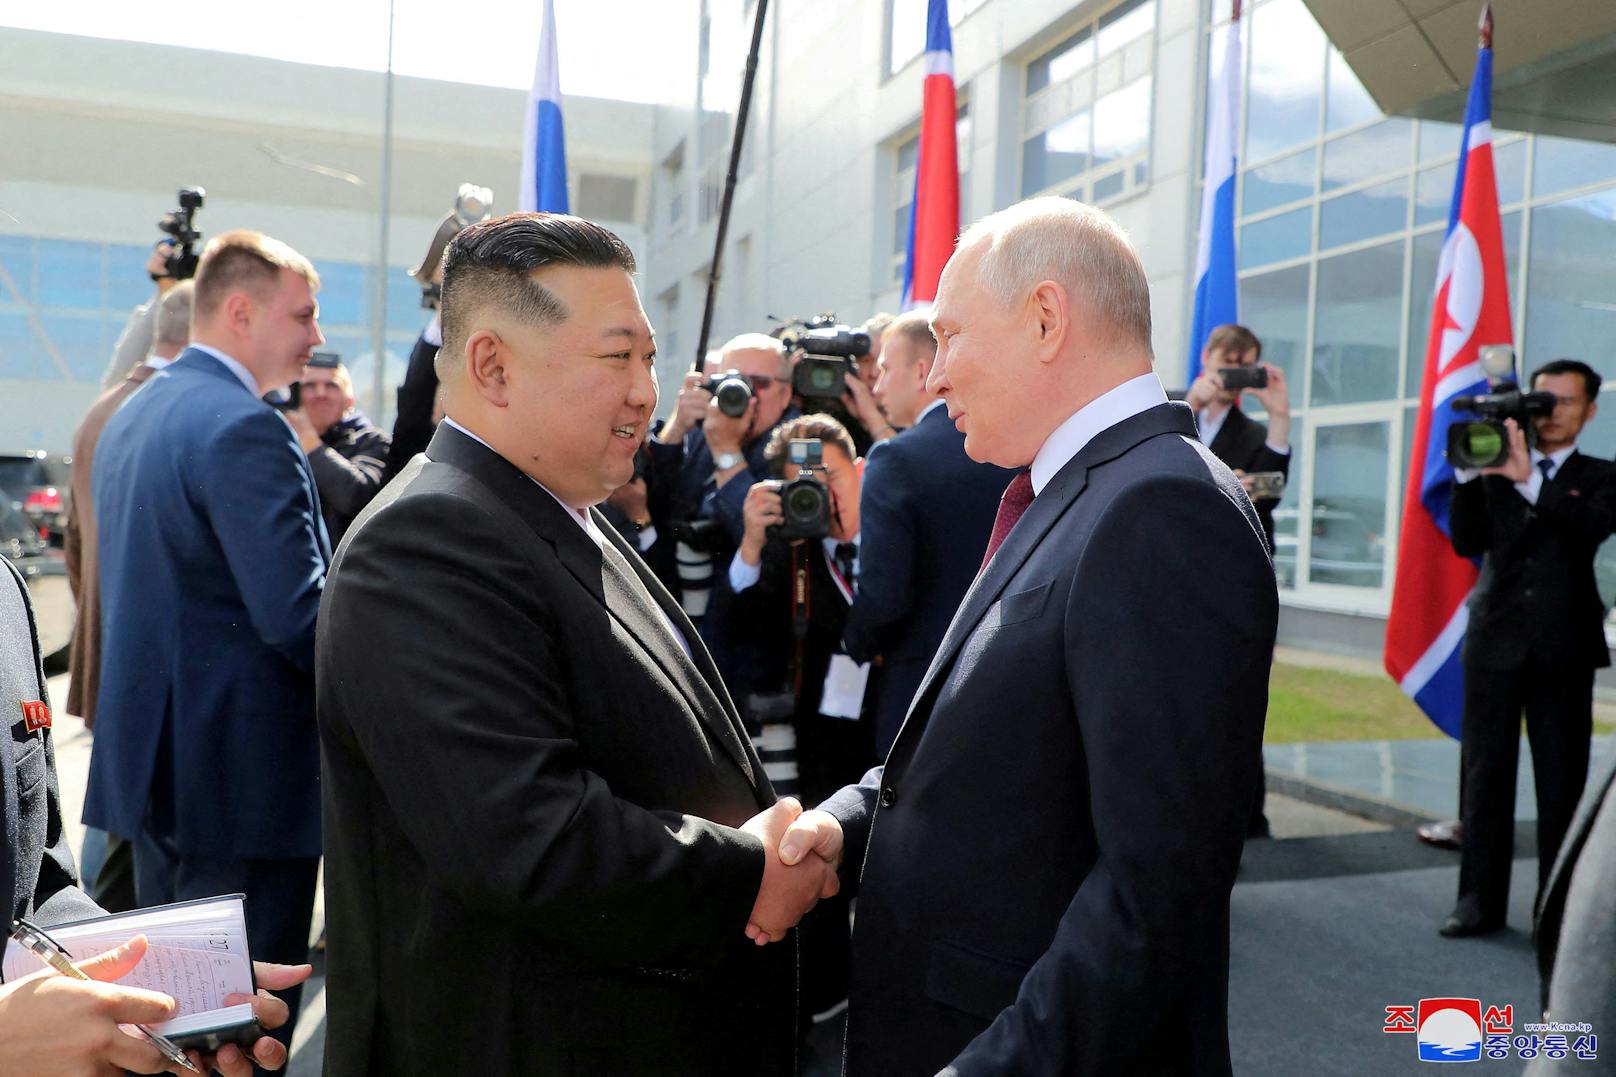 Nordkorea hat laut USA Waffen an Moskau geliefert